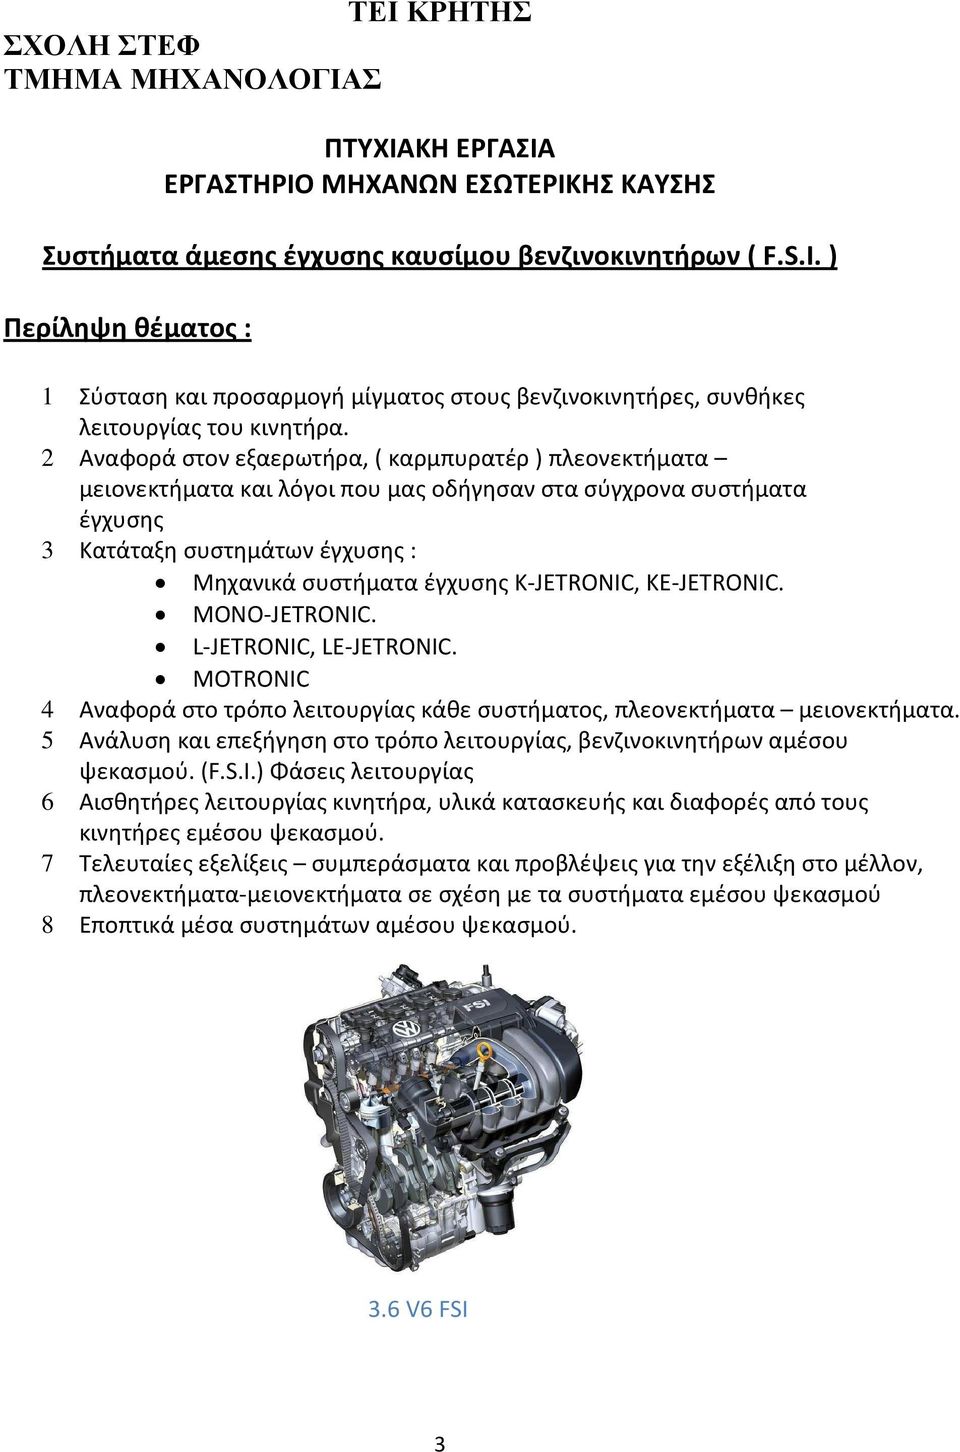 2 Αναφορά στον εξαερωτήρα, ( καρμπυρατέρ ) πλεονεκτήματα μειονεκτήματα και λόγοι που μας οδήγησαν στα σύγχρονα συστήματα έγχυσης 3 Κατάταξη συστημάτων έγχυσης : Μηχανικά συστήματα έγχυσης K-JETRONIC,